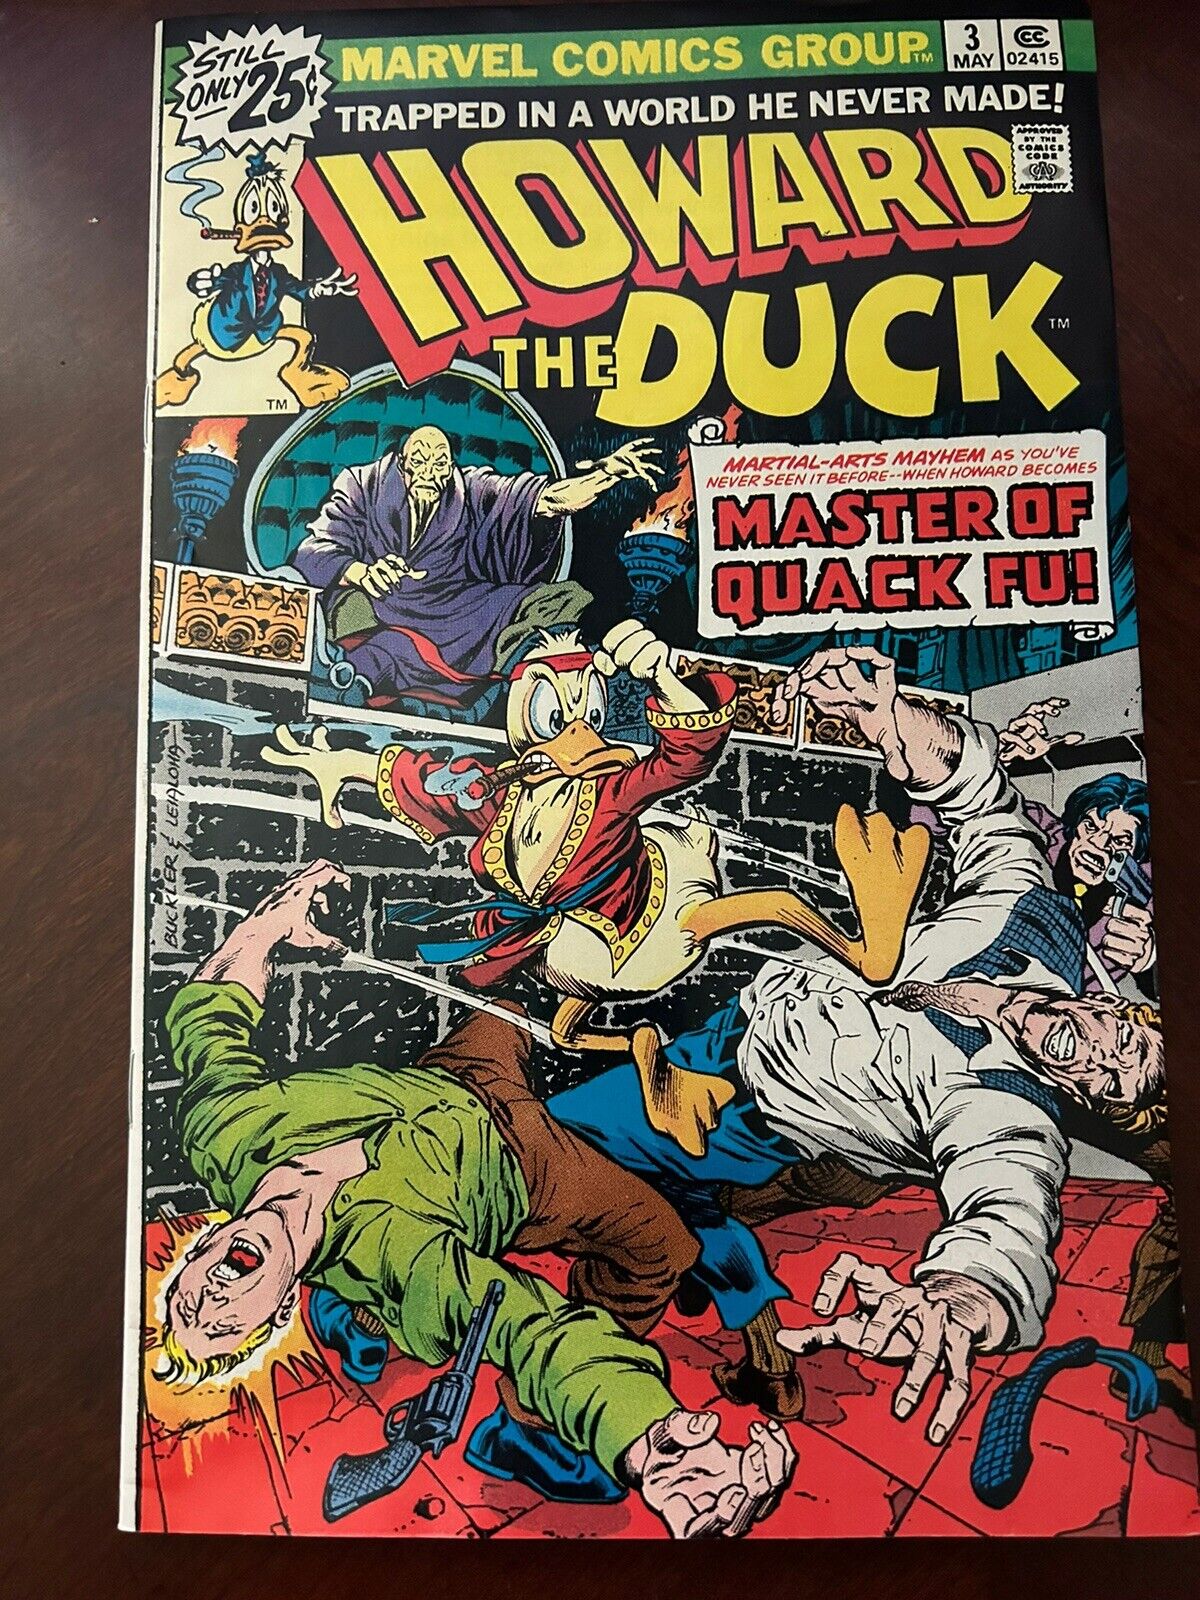 Howard the Duck, Vol. 1 No. 3 - May 1976